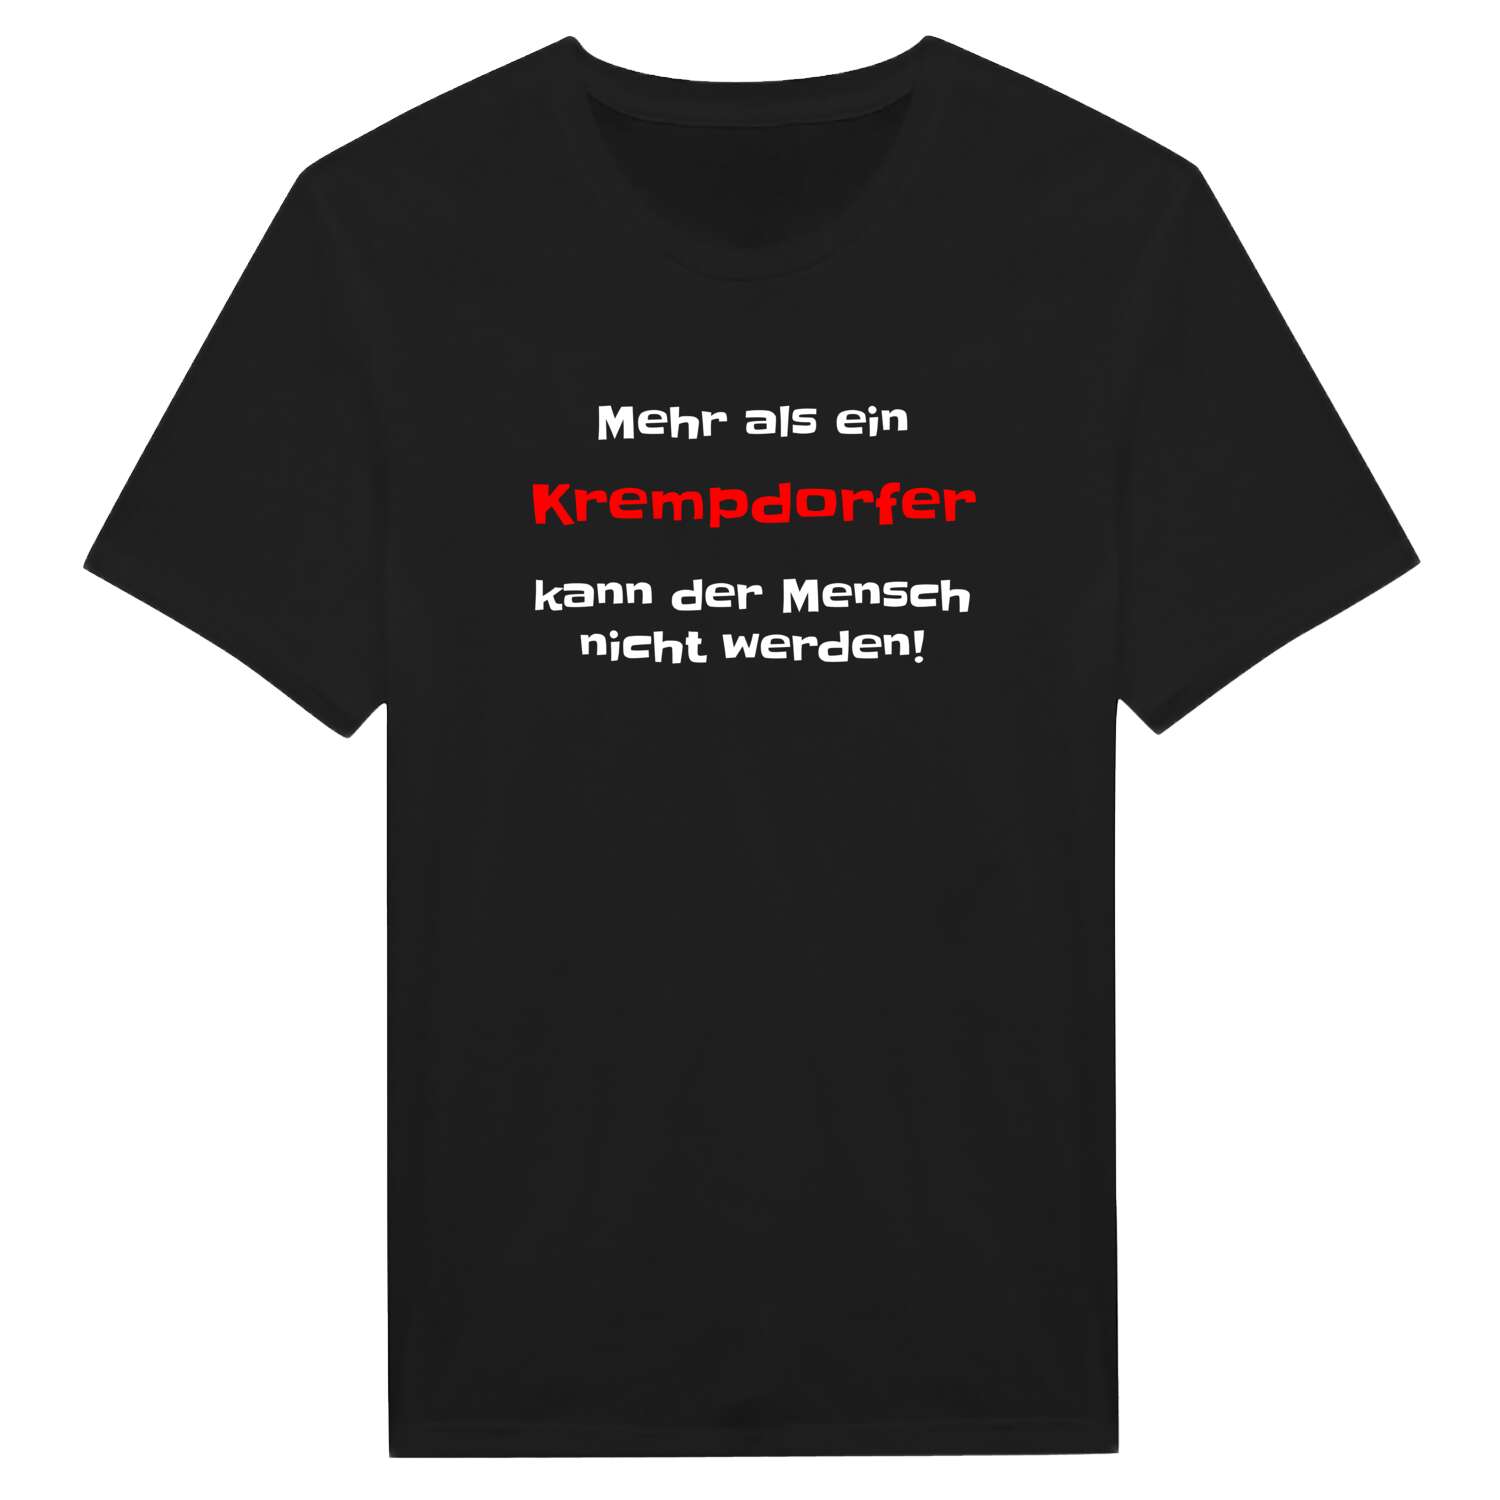 Krempdorf T-Shirt »Mehr als ein«